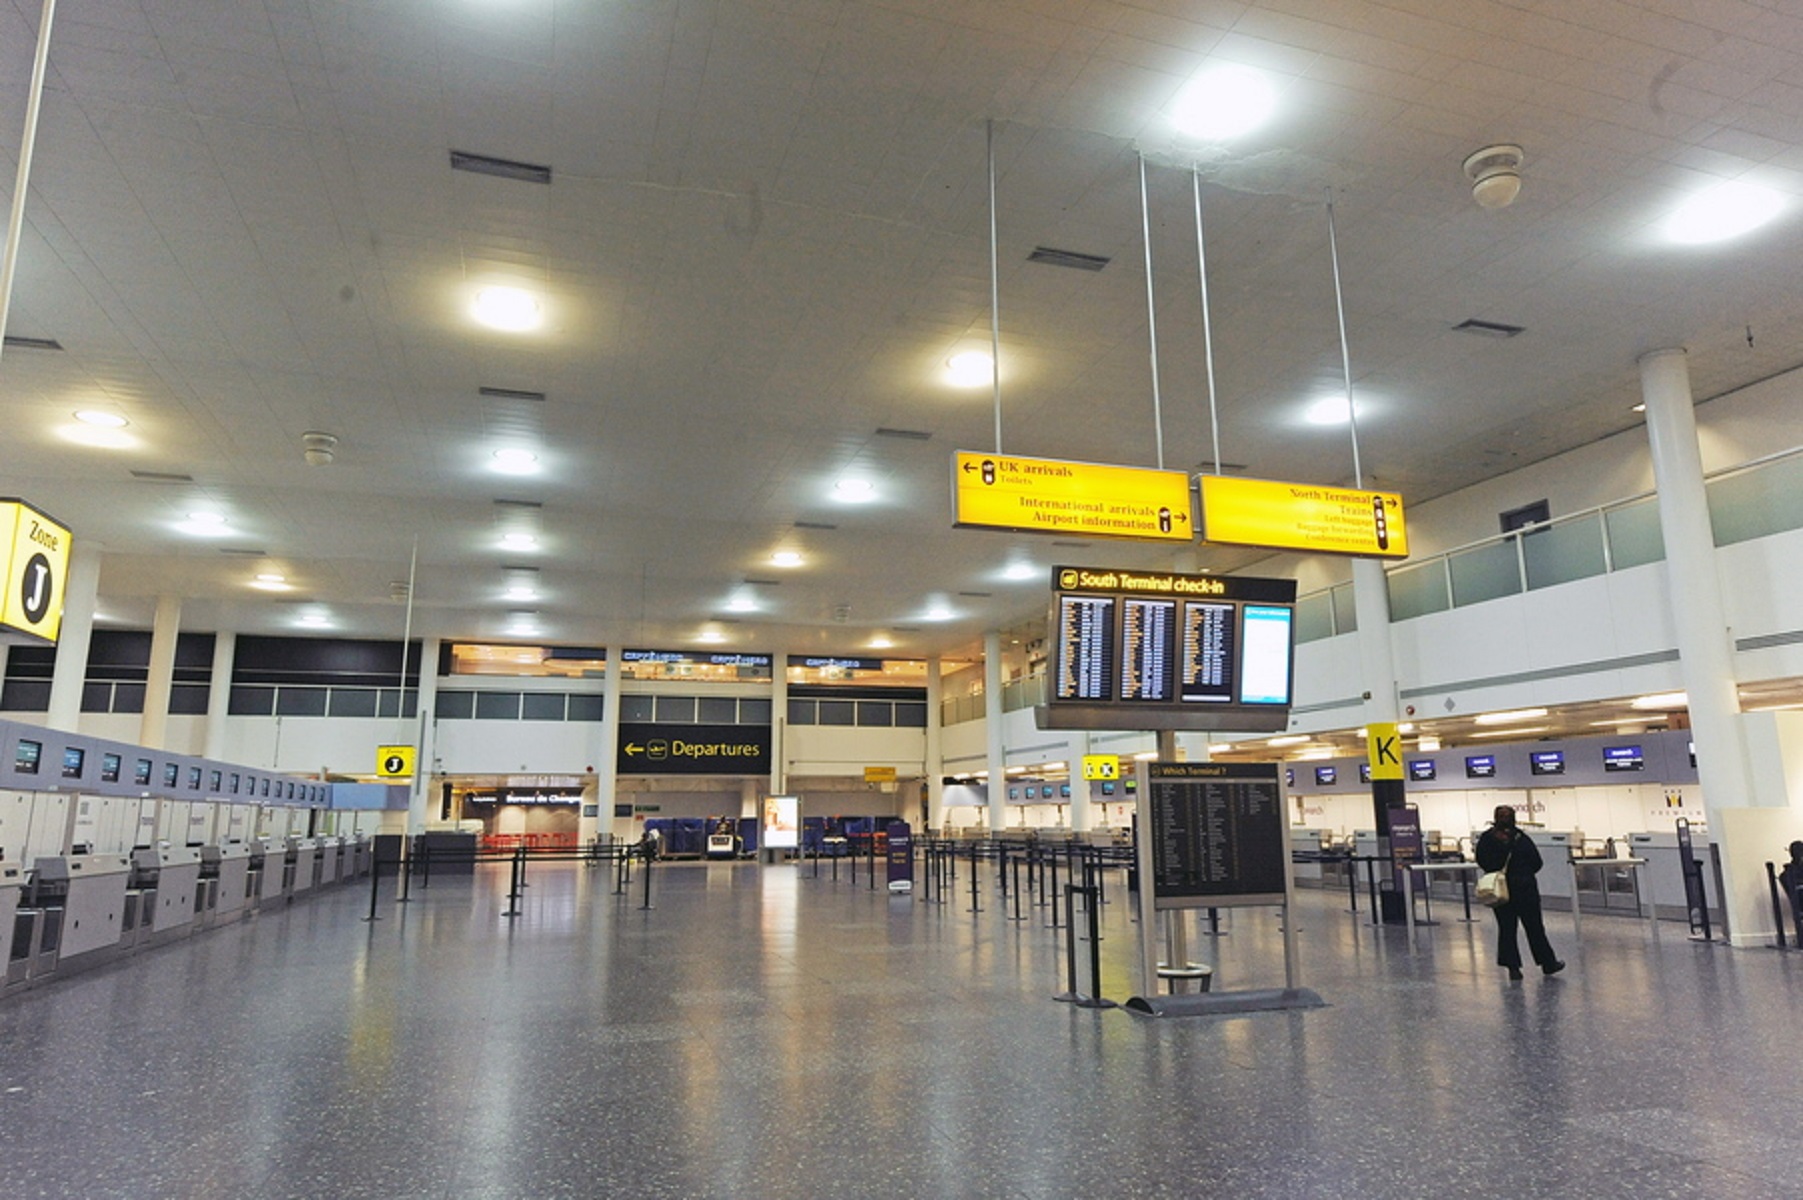 Αναστέλλονται όλες οι πτήσεις του αεροδρομίου Γκάτγουικ στο Λονδίνο! Τι συνέβη